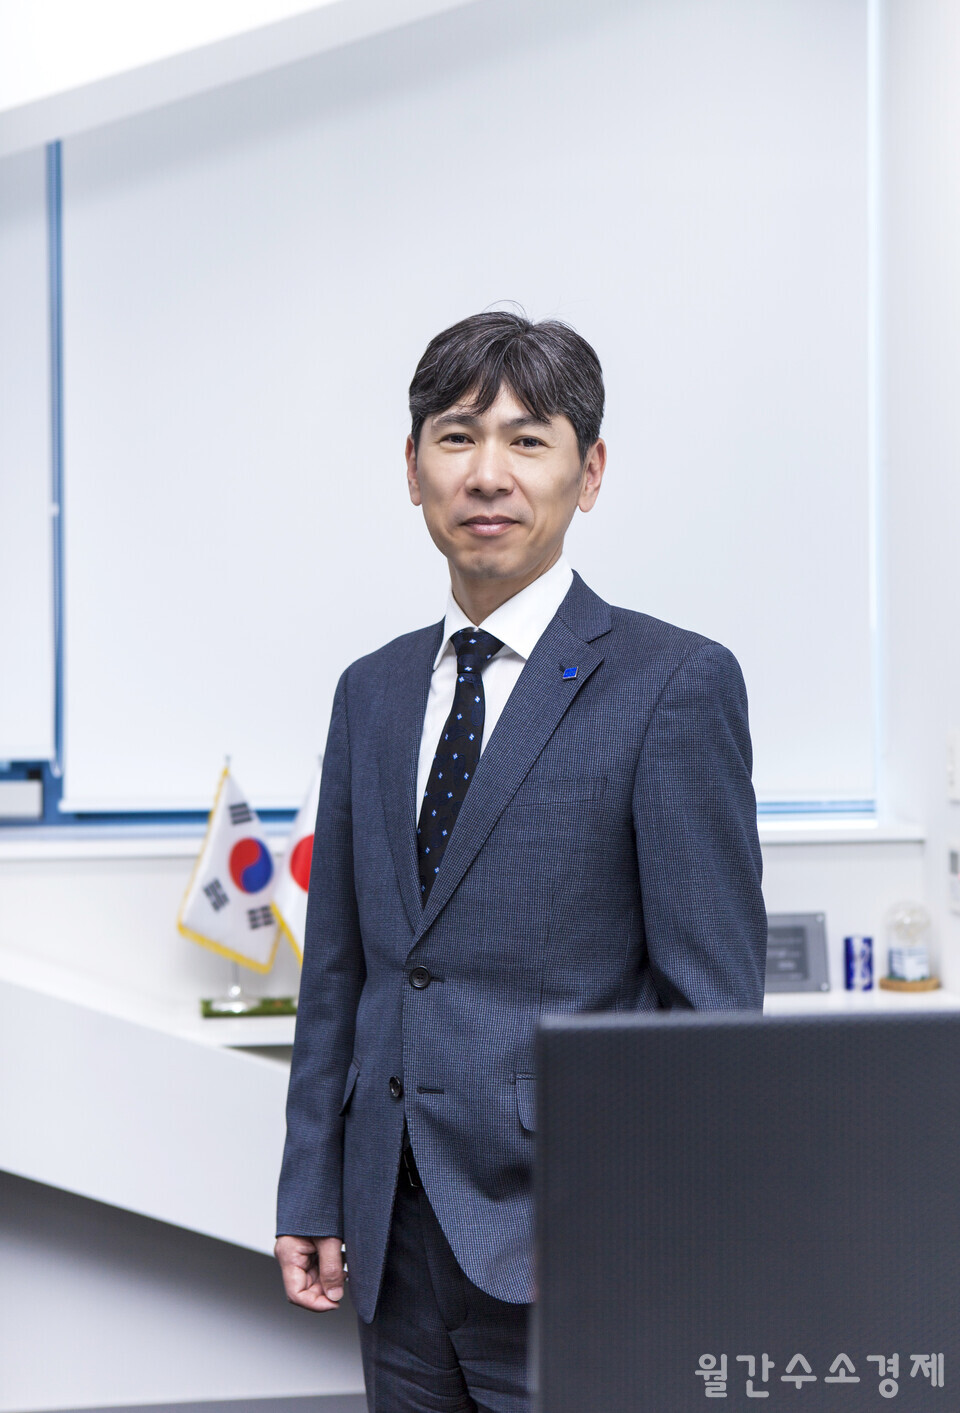 야마모토 쇼우지 호리바코리아 대표이사는 "계측, 분석 분야의 원천기술을 토대로 토털 솔루션을 제공한다"고 말한다.